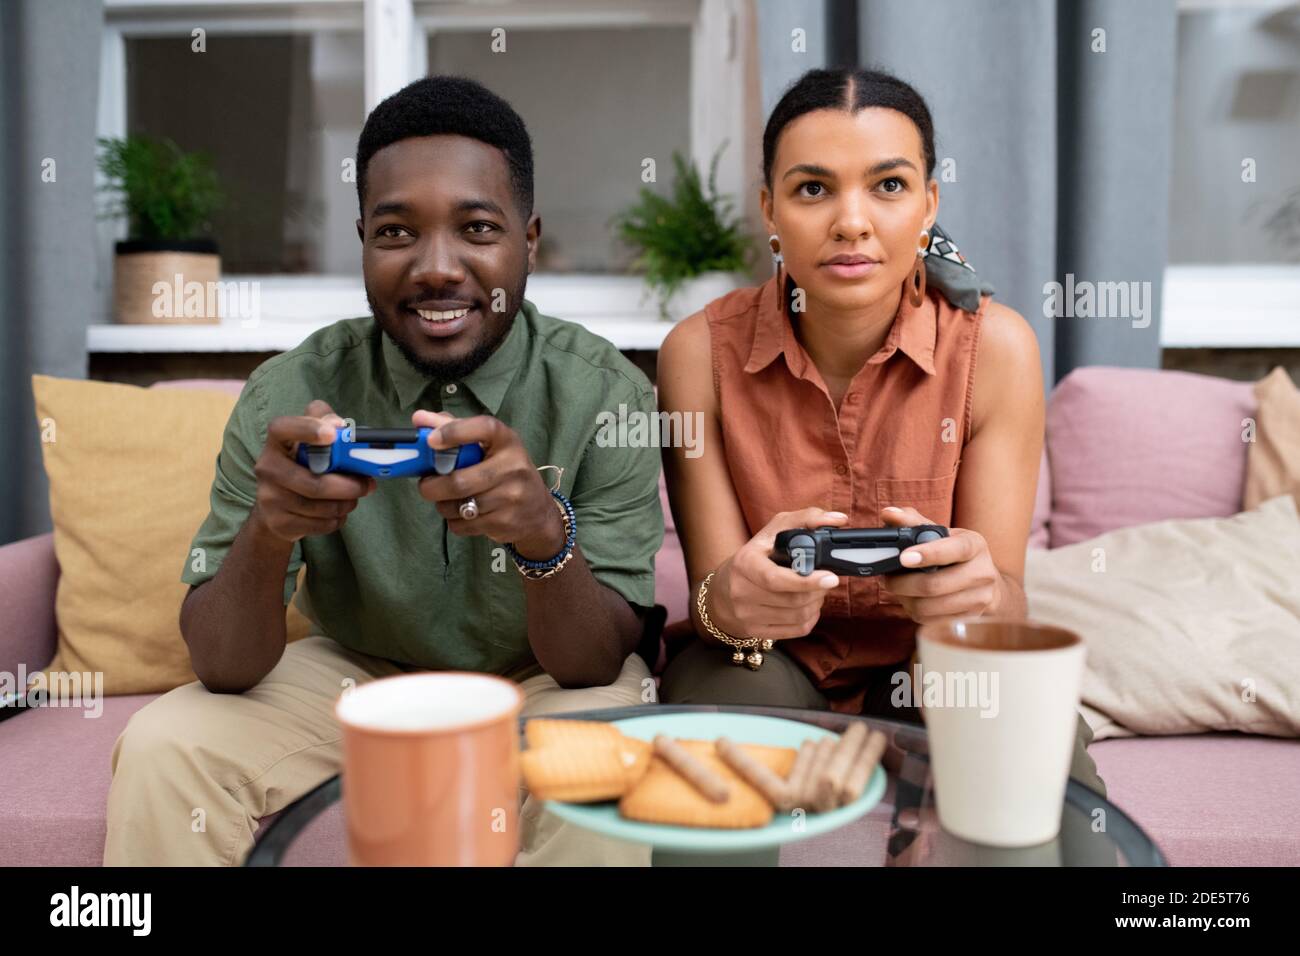 Feliz adolescente de etnia africana y chica de raza mixta sentada en el sofá contra la ventana en la sala de estar y jugar a videojuegos Foto de stock